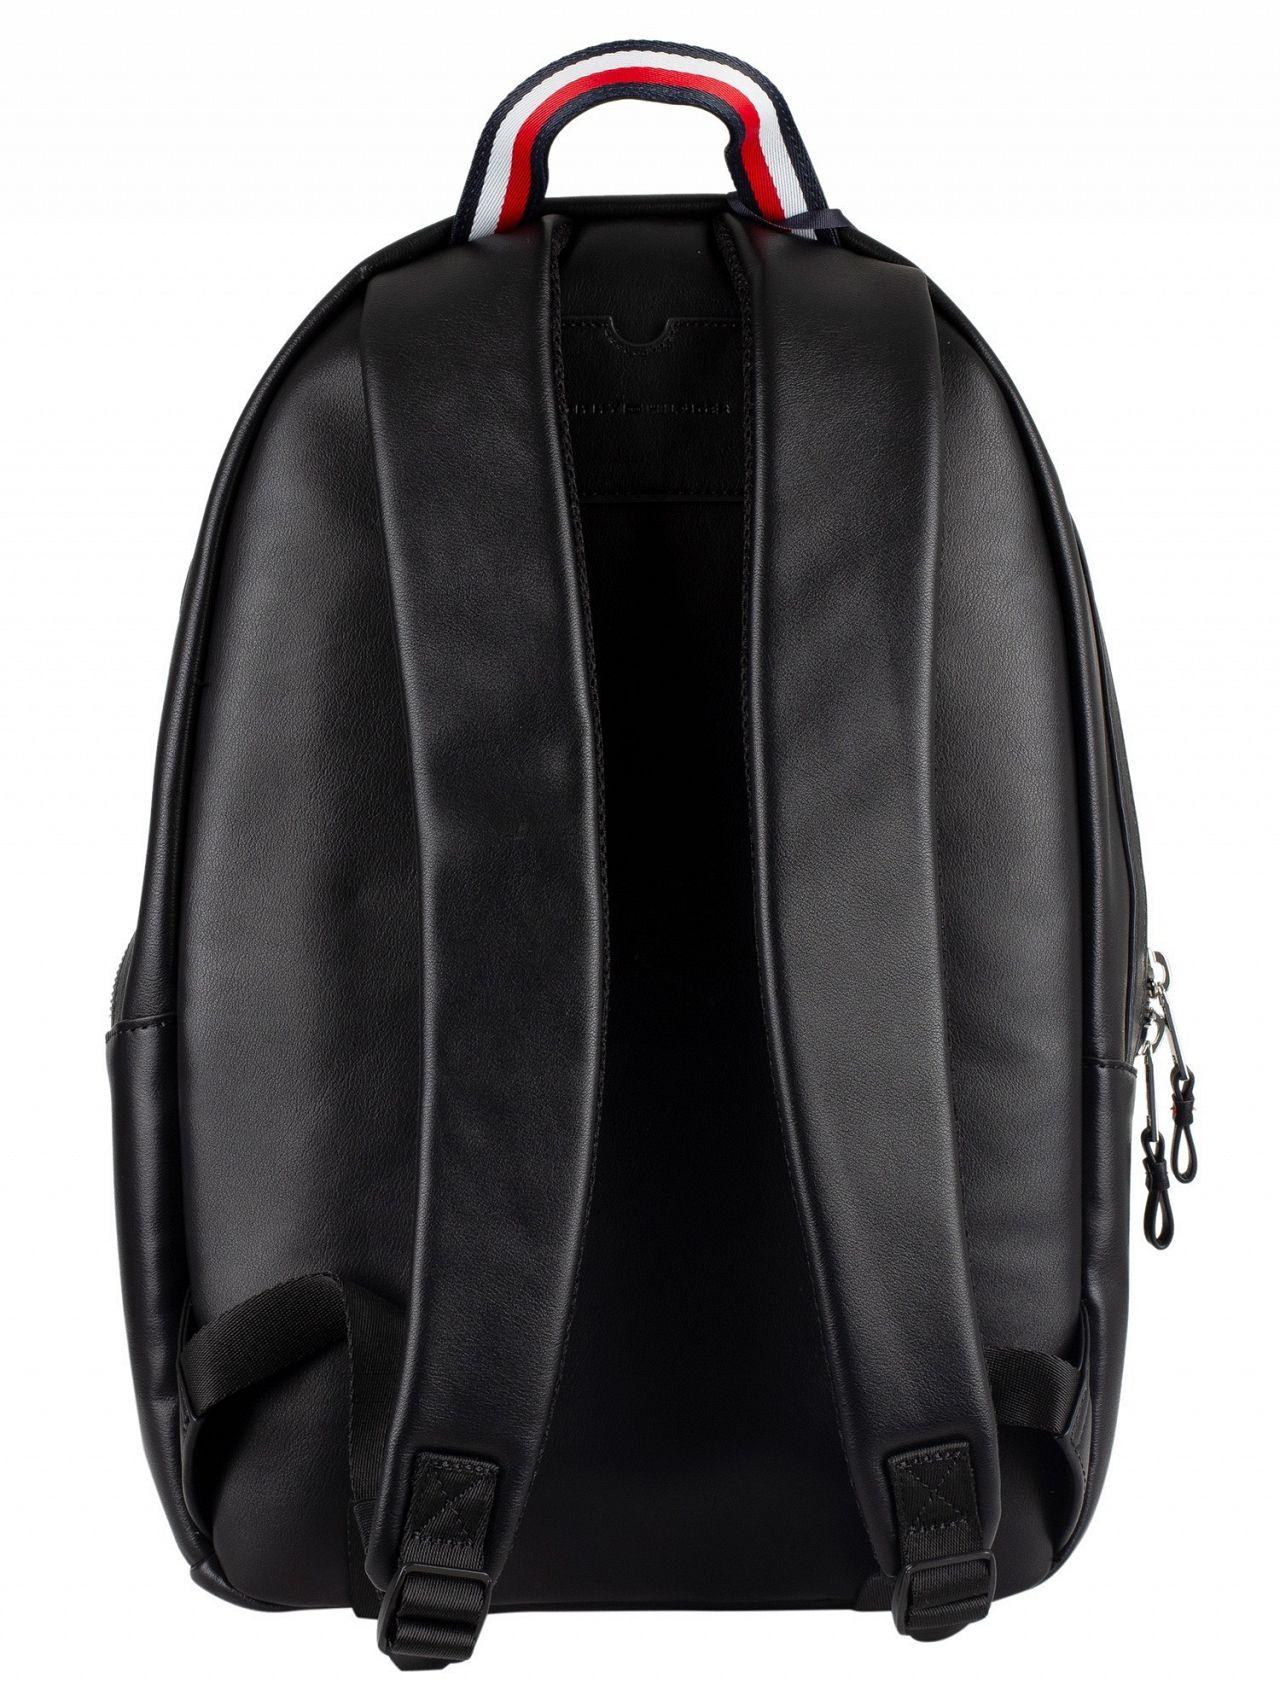 Tommy Hilfiger Black Elevated Backpack in Black for Men - Lyst